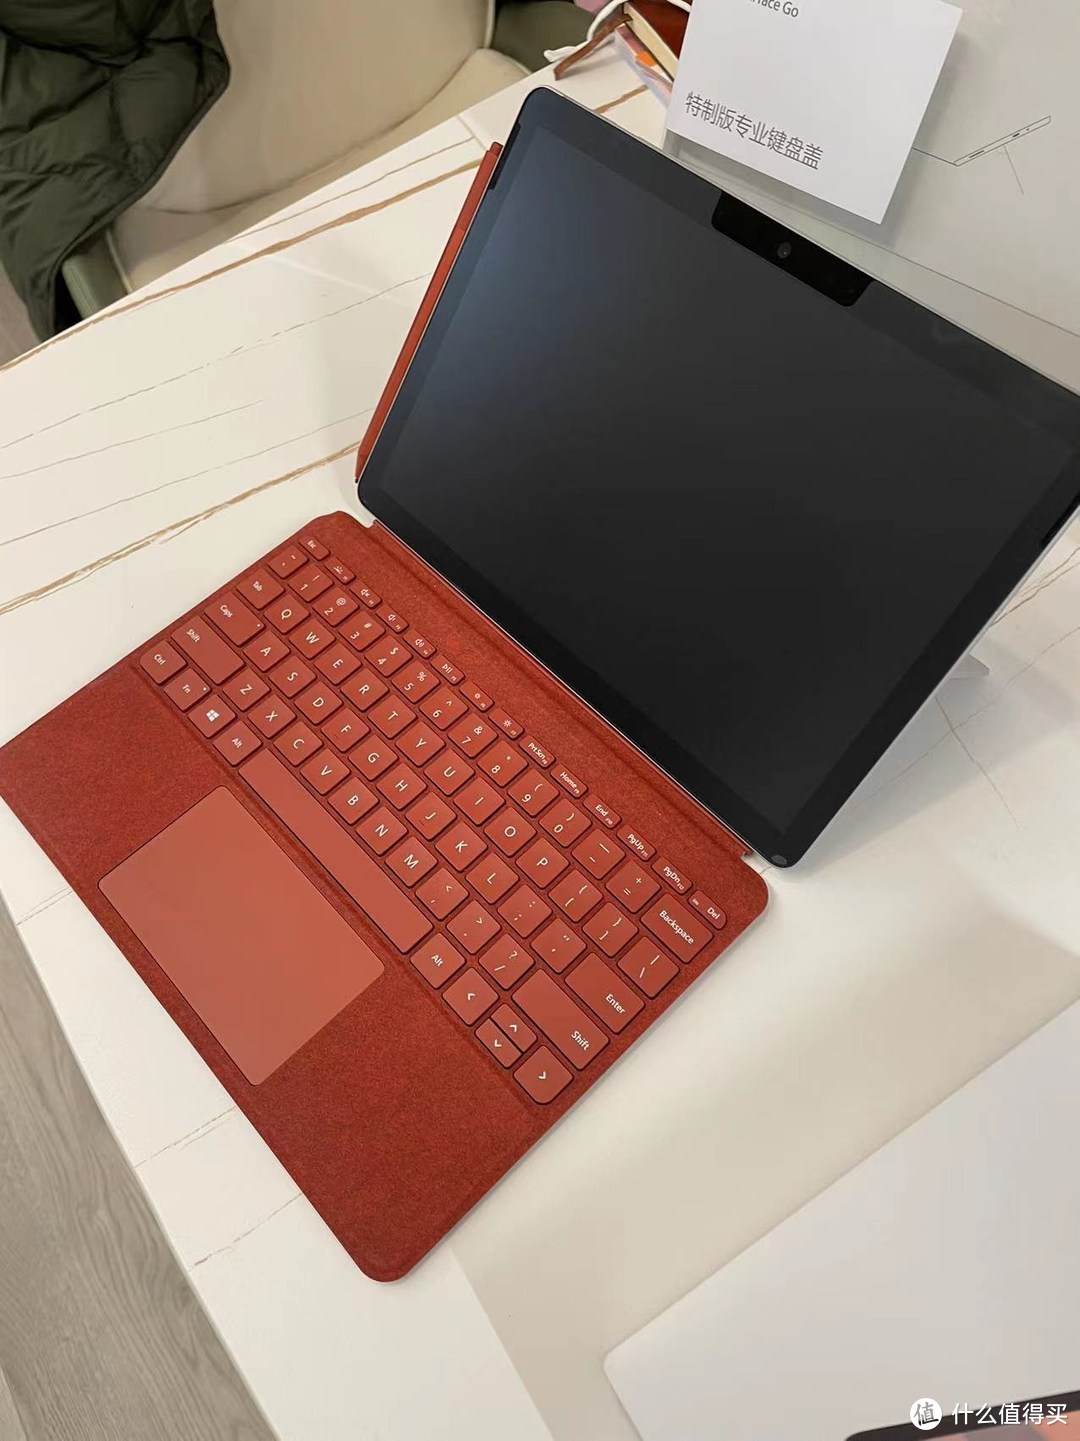 给LP大人的礼物—1900元购入全套带原装键盘和触控笔的8+128G Surface Go 2，我称之为性价比最高的轻办公